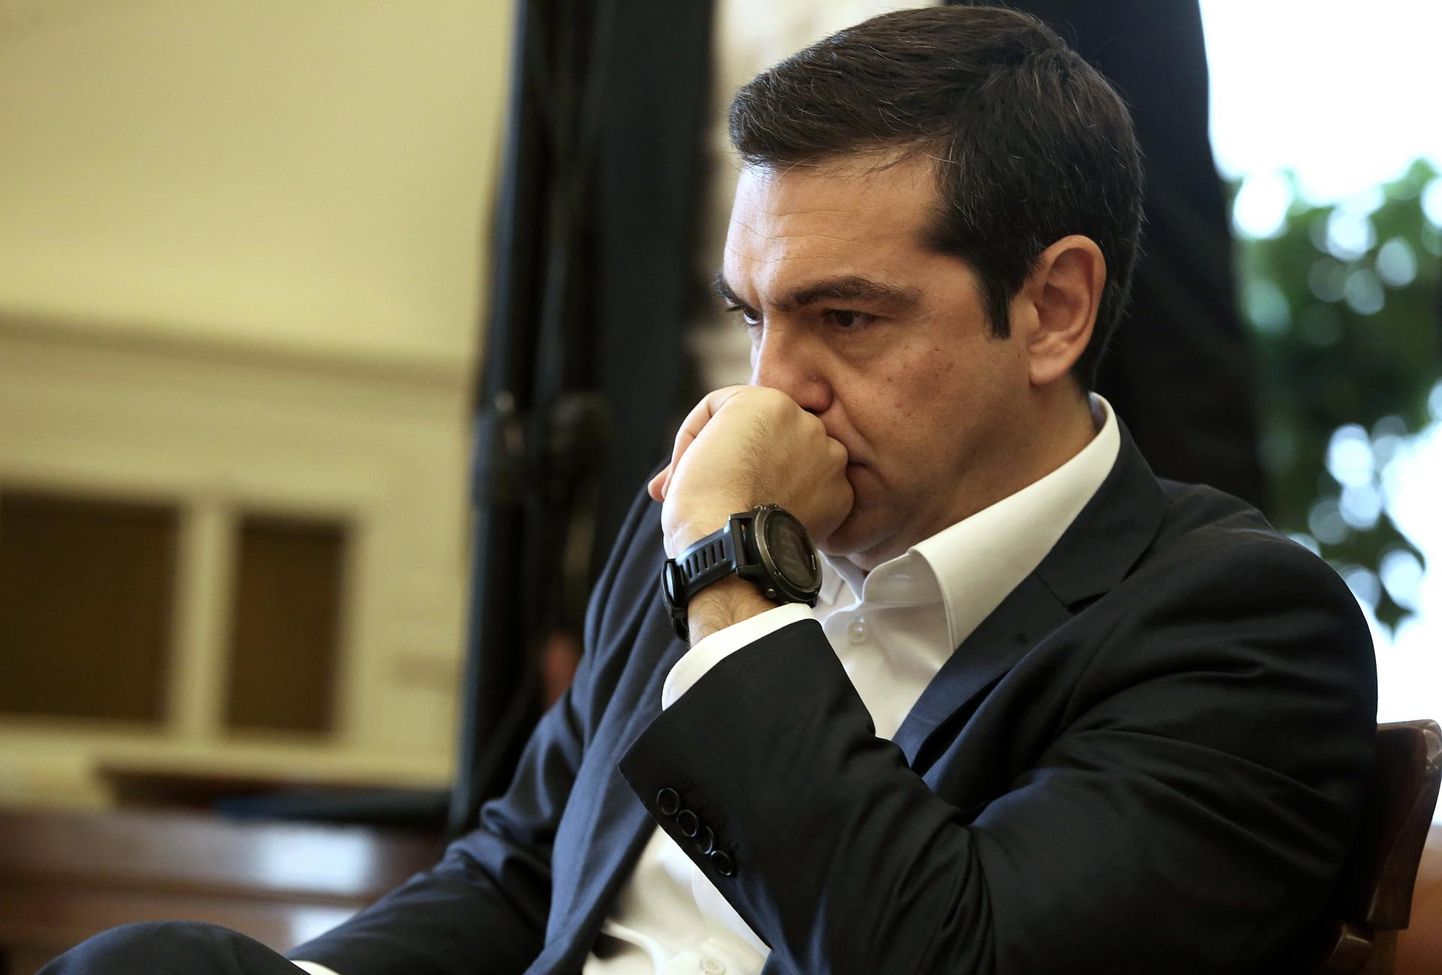 Kreeka peaminister Aléxis Tsípras on pidanud valitsuse püsimise nimel kaalule panema enda usalduse.